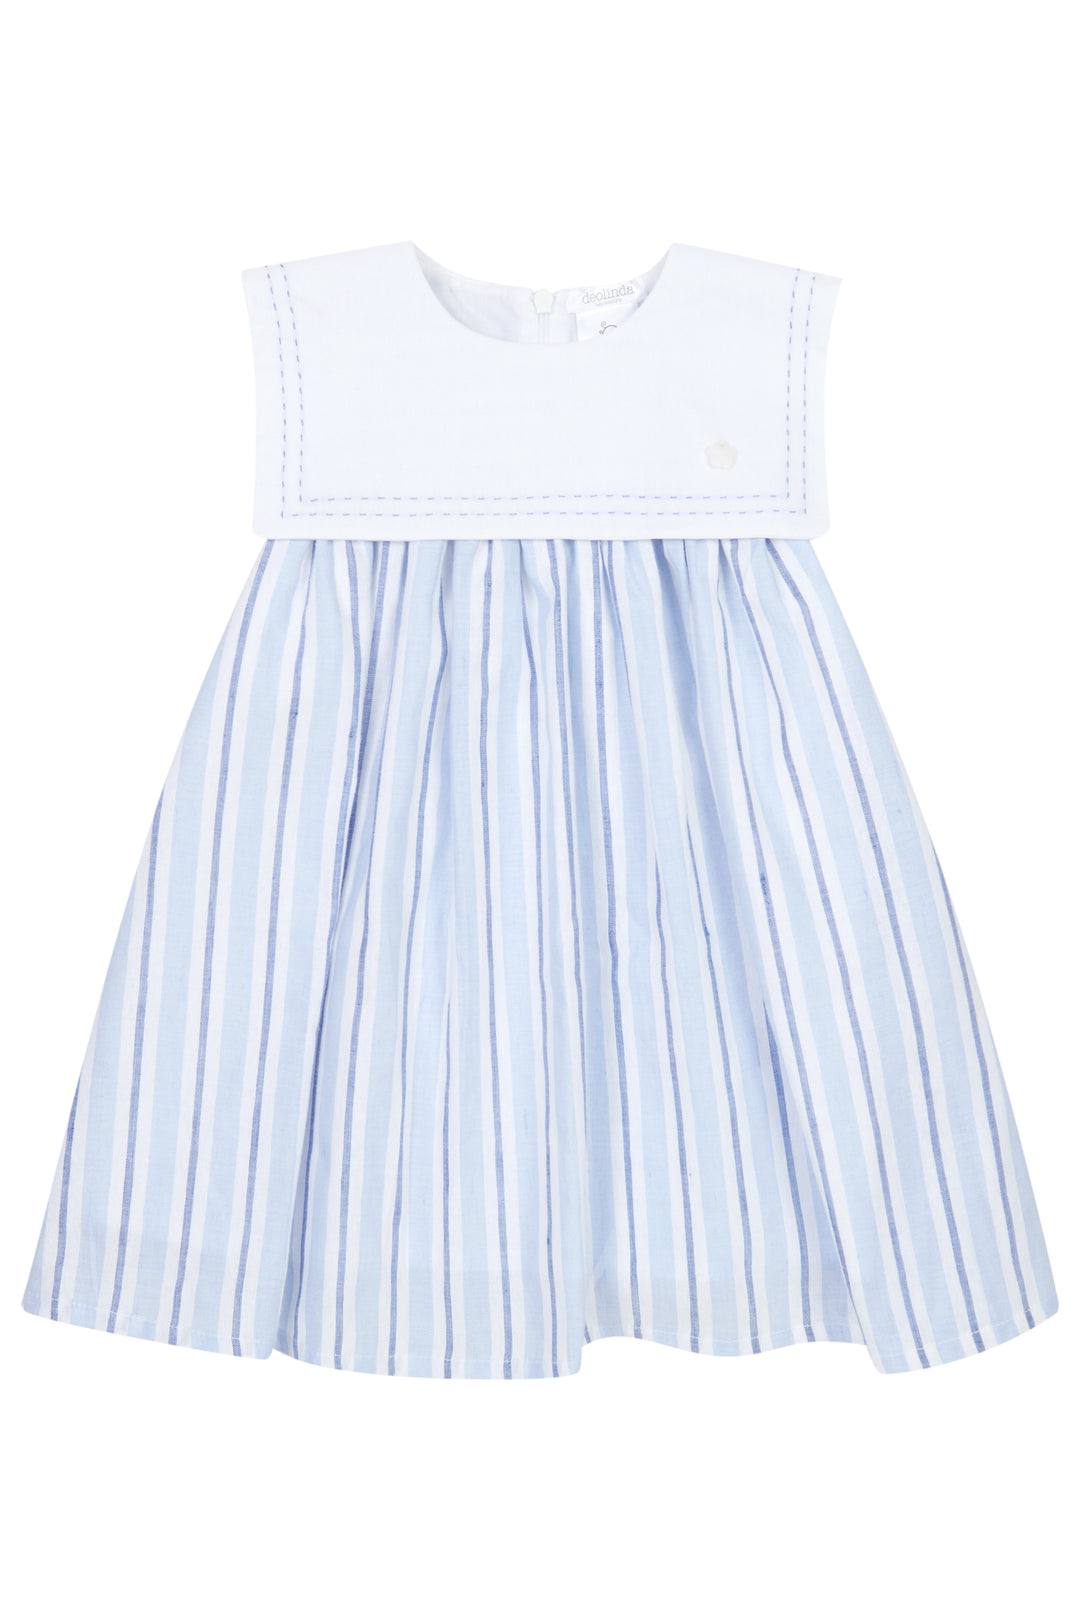 Deolinda PREORDER "Penelope" Blue Striped Sailor Dress | Millie and John